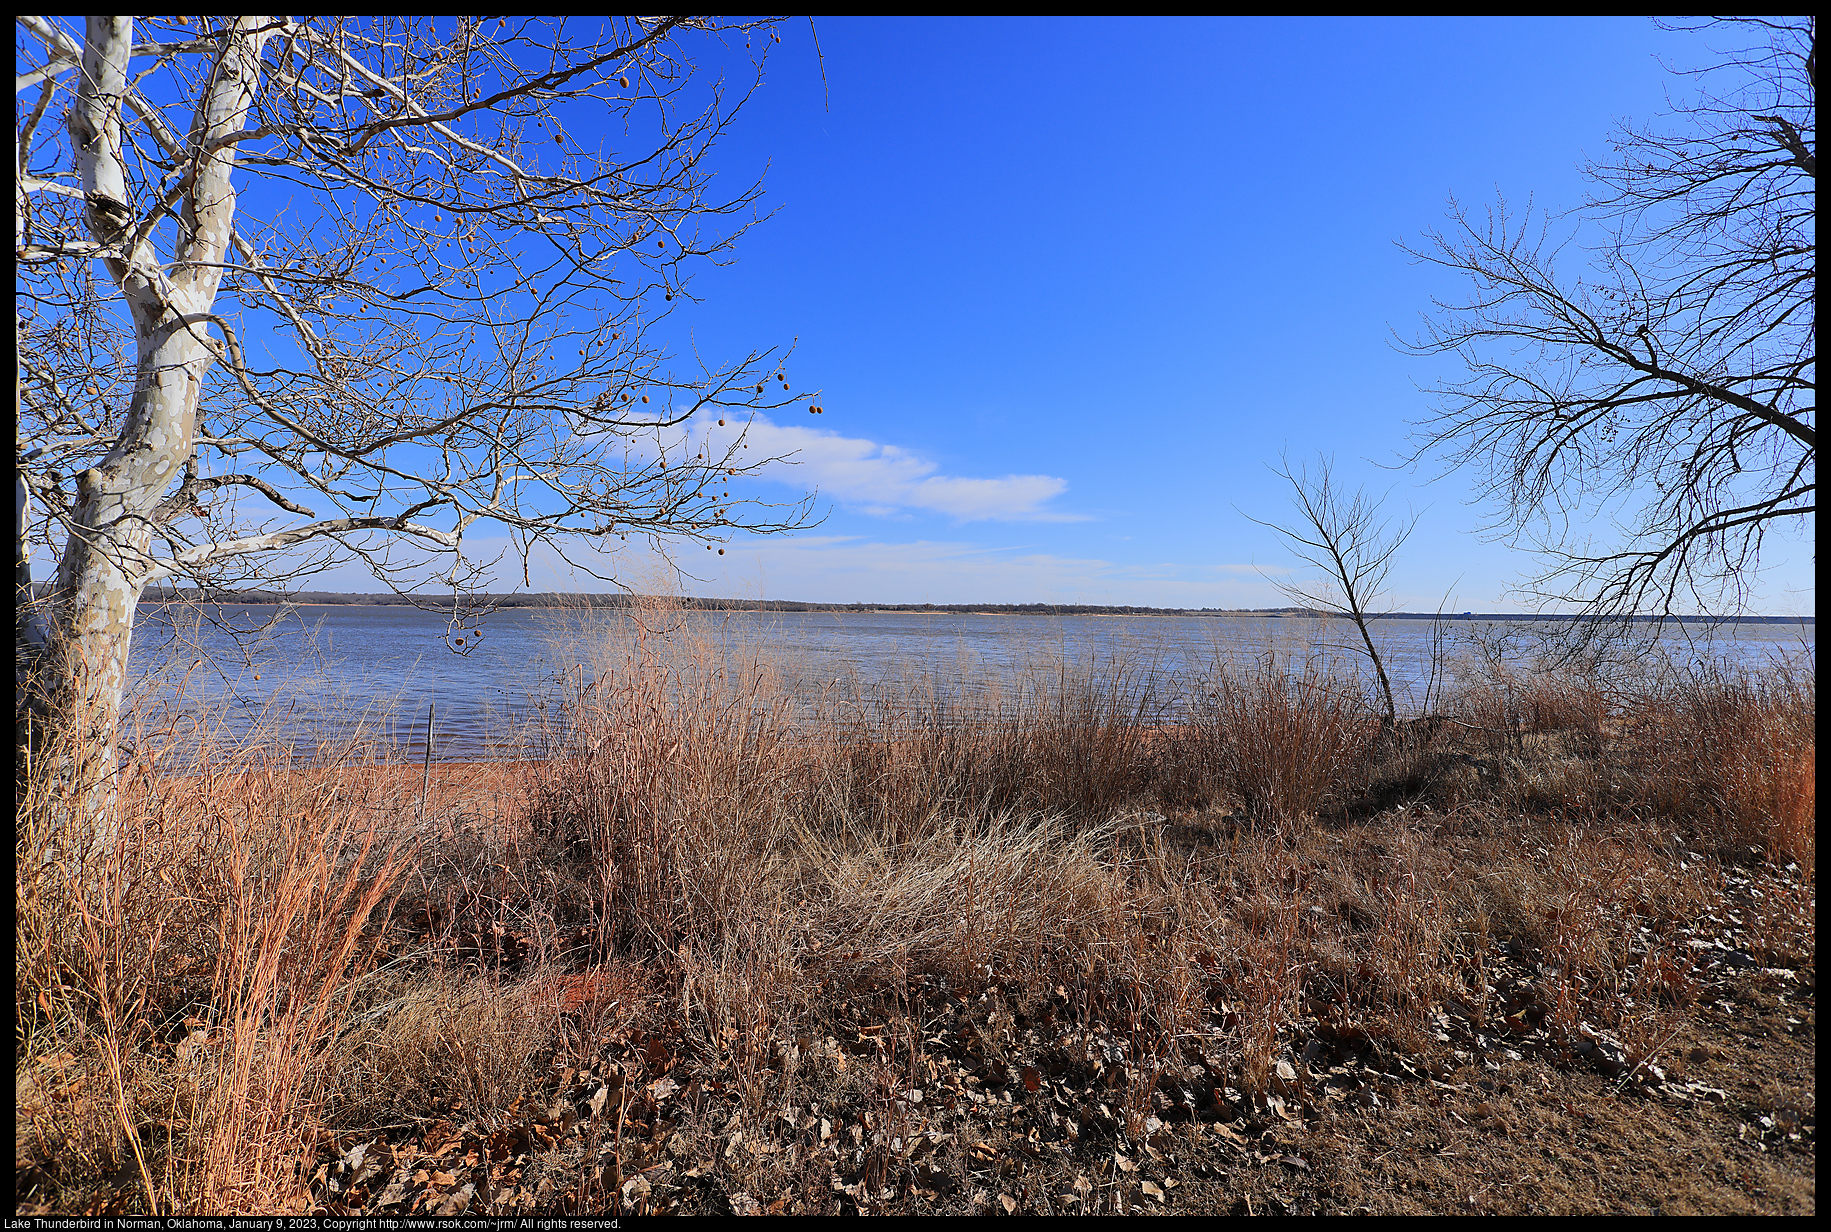 Lake Thunderbird in Norman, Oklahoma, January 9, 2023